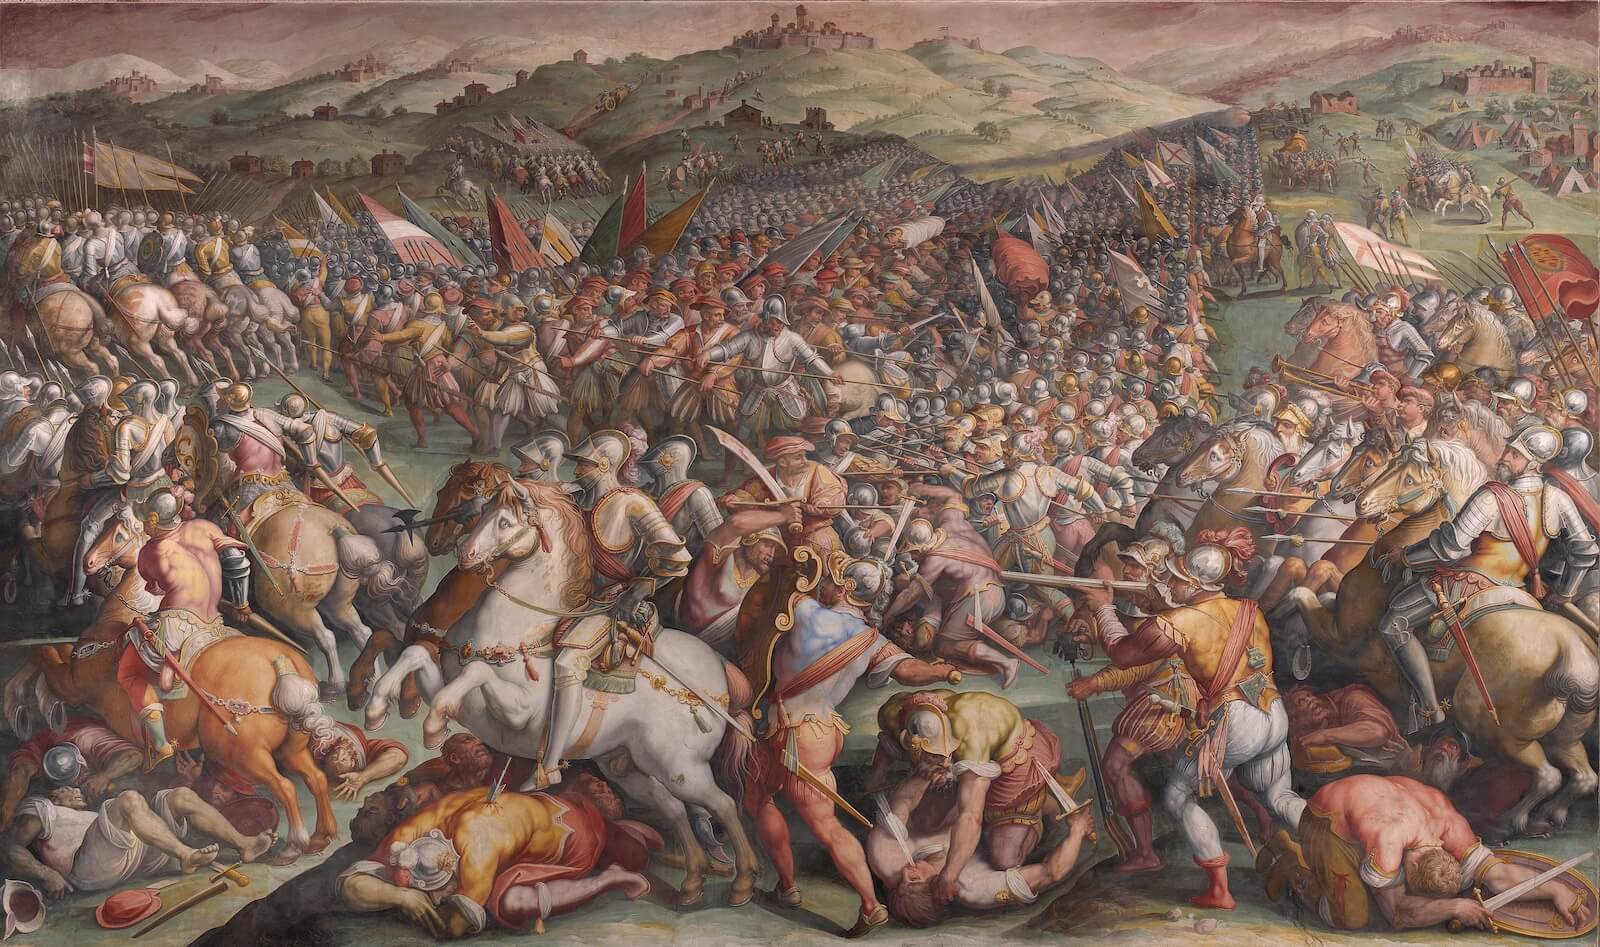 La batalla de Marciano (1571)